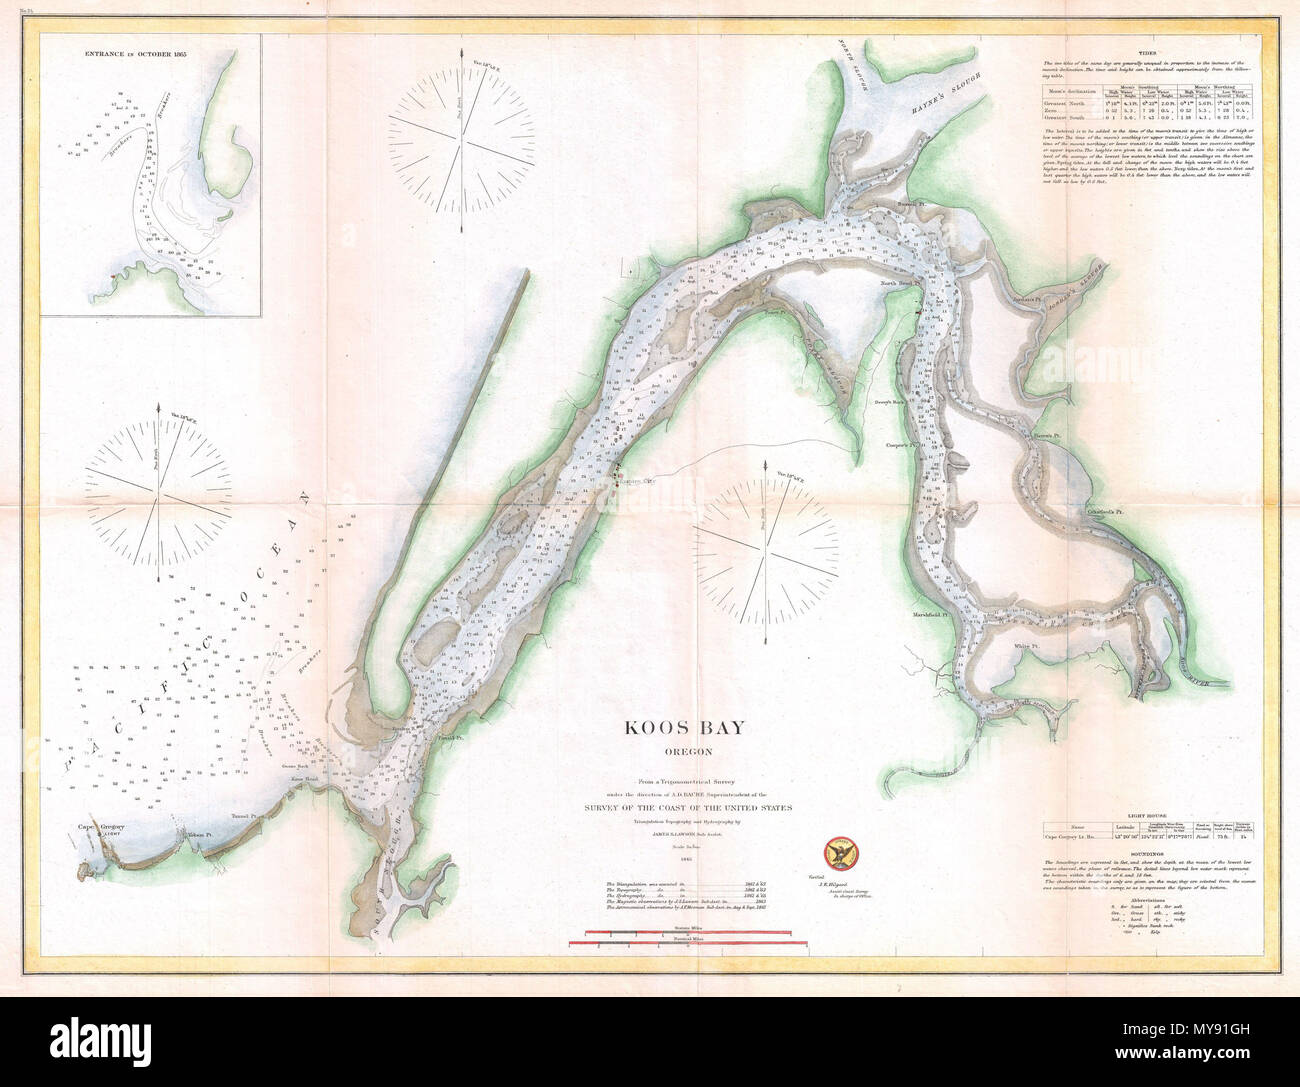 . Koos Bay, Oregon. Englisch: ein sehr schönes Beispiel der Karte der US-Küstenwache 1865 oder das Diagramm von Coos Bay (Koos Bay), Oregon. Details die S-förmige Einlass so weit wie der coos River. Erkennt Empire City, Marshfield, und zu anderen Zielen. Marshfield wurde später umbenannt in Coos Bay und hat einen der größten kommerziellen Schifffahrt Häfen in Oregon. Dieses Diagramm bietet ausführlich Informationen zur Navigation im gesamten, Identifizierung von Untiefen, Biegungen, buchten Bojen und Leistungsschalter. Unzählige Tiefenmessungen im gesamten Gebäude. Der obere rechte Quadrant hatte einen Textblock bieten Hinweise auf die Gezeiten. Einen ähnlichen Satz, in Th Stockfoto